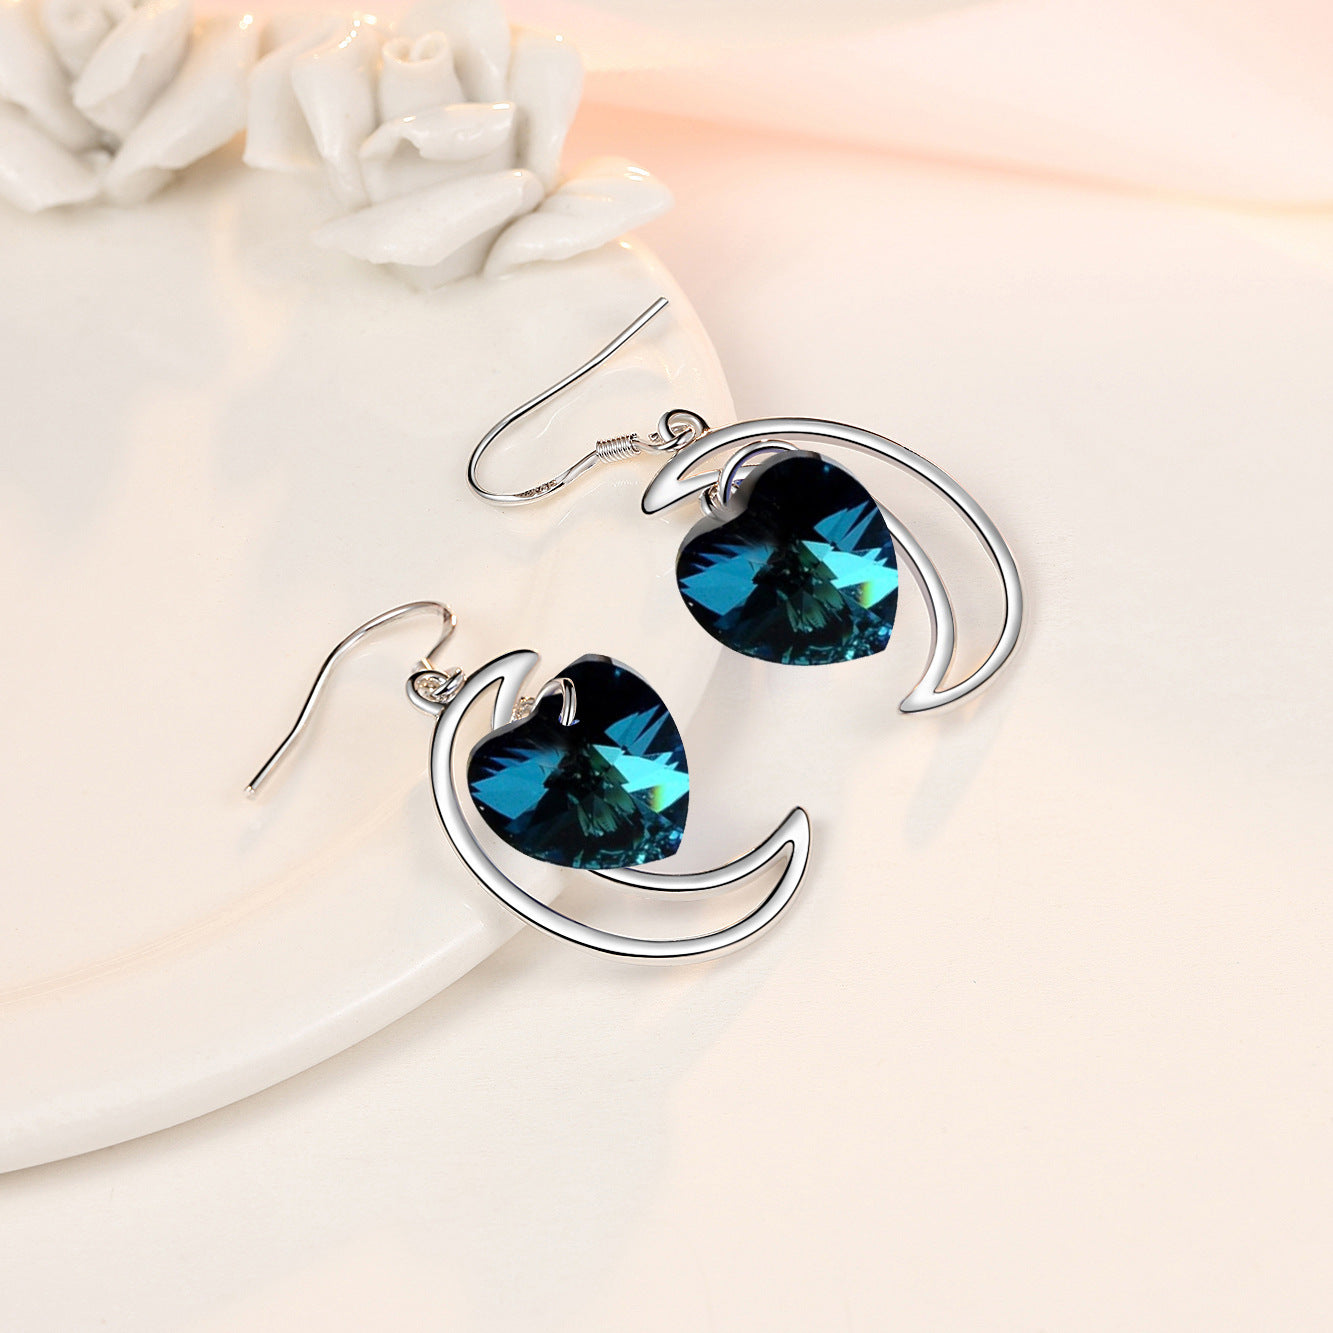 HuiSept Silver Earrings 925 Jewelry Heart-shape